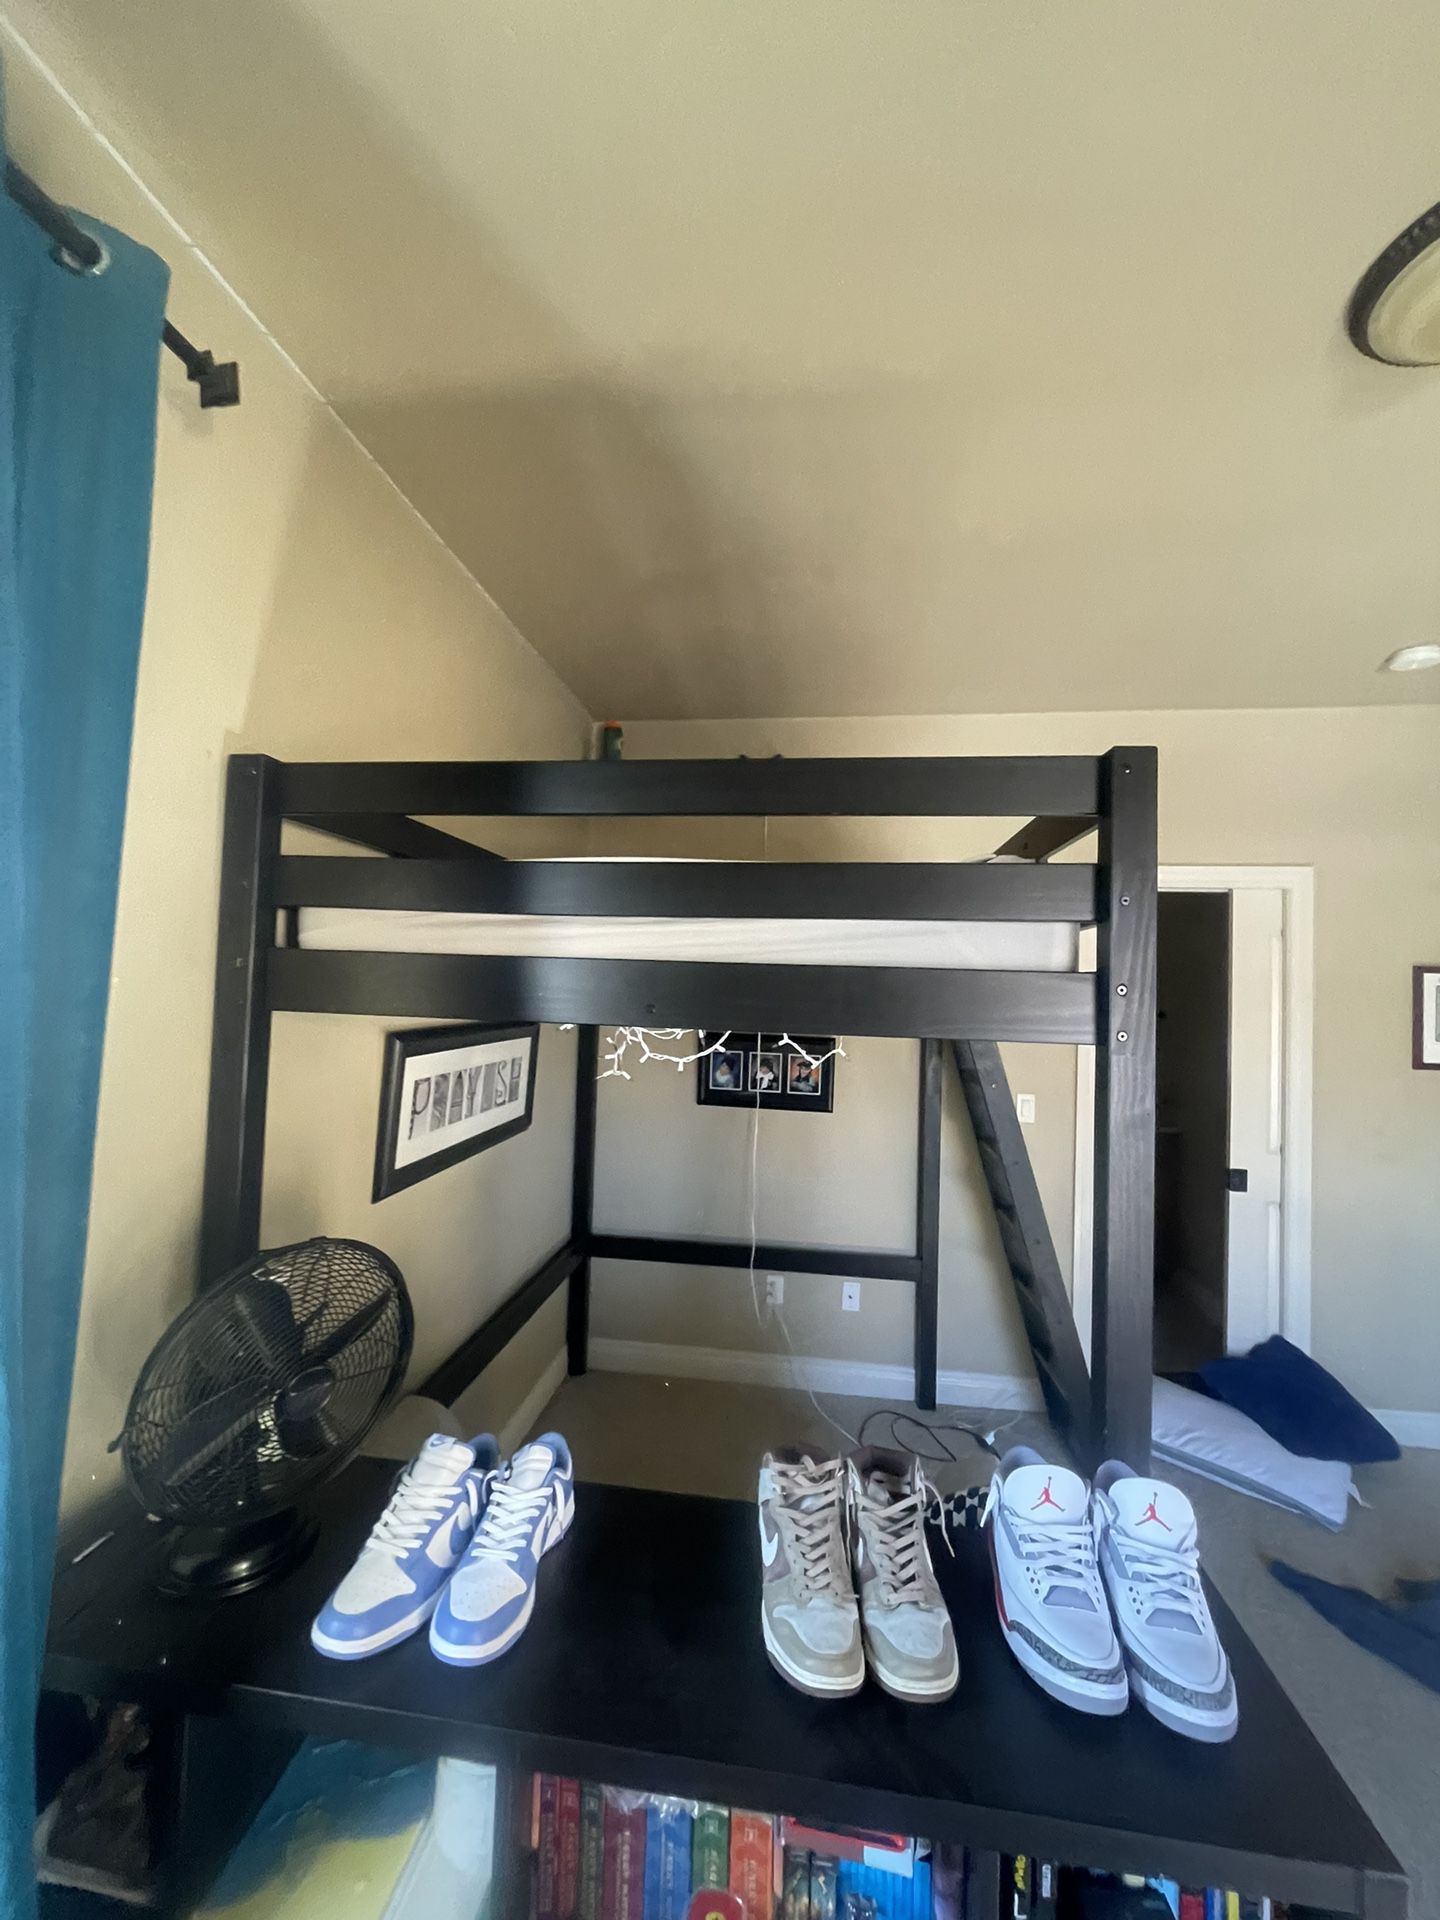 Loft/Bunk Solid Wood Bed frame- Black